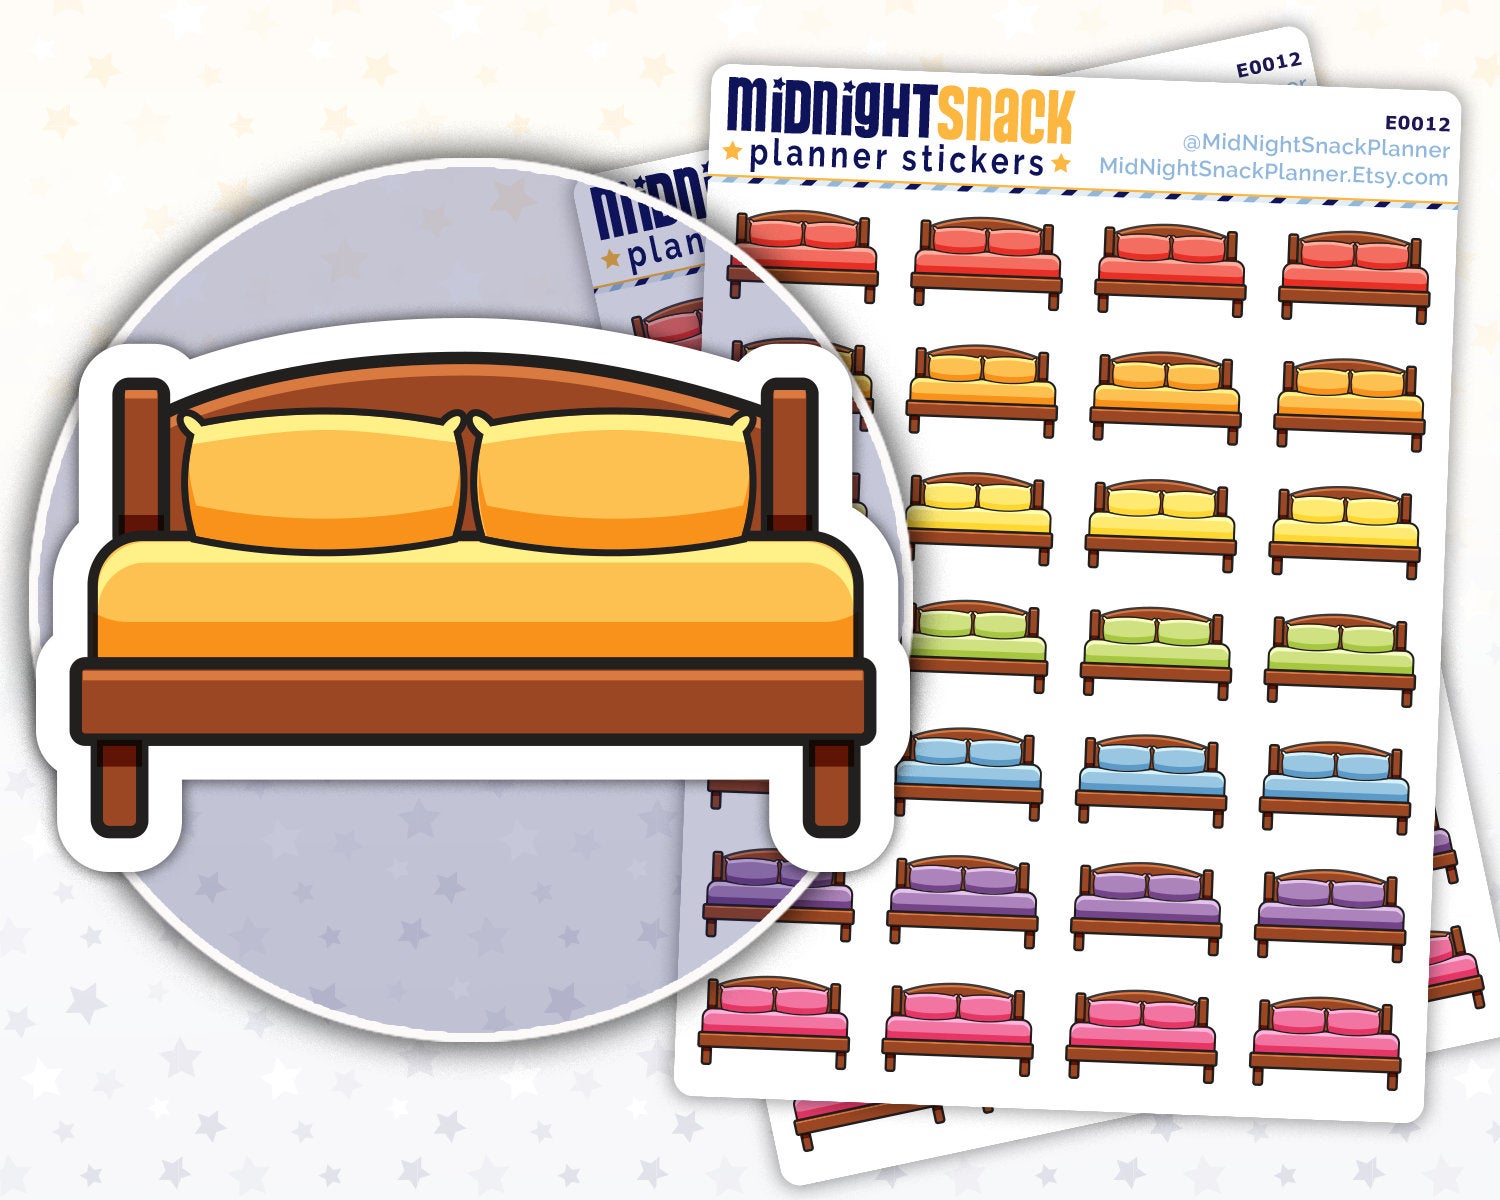 Wash Bedding Icon: Laundry Planner Sticker Midnight Snack Planner